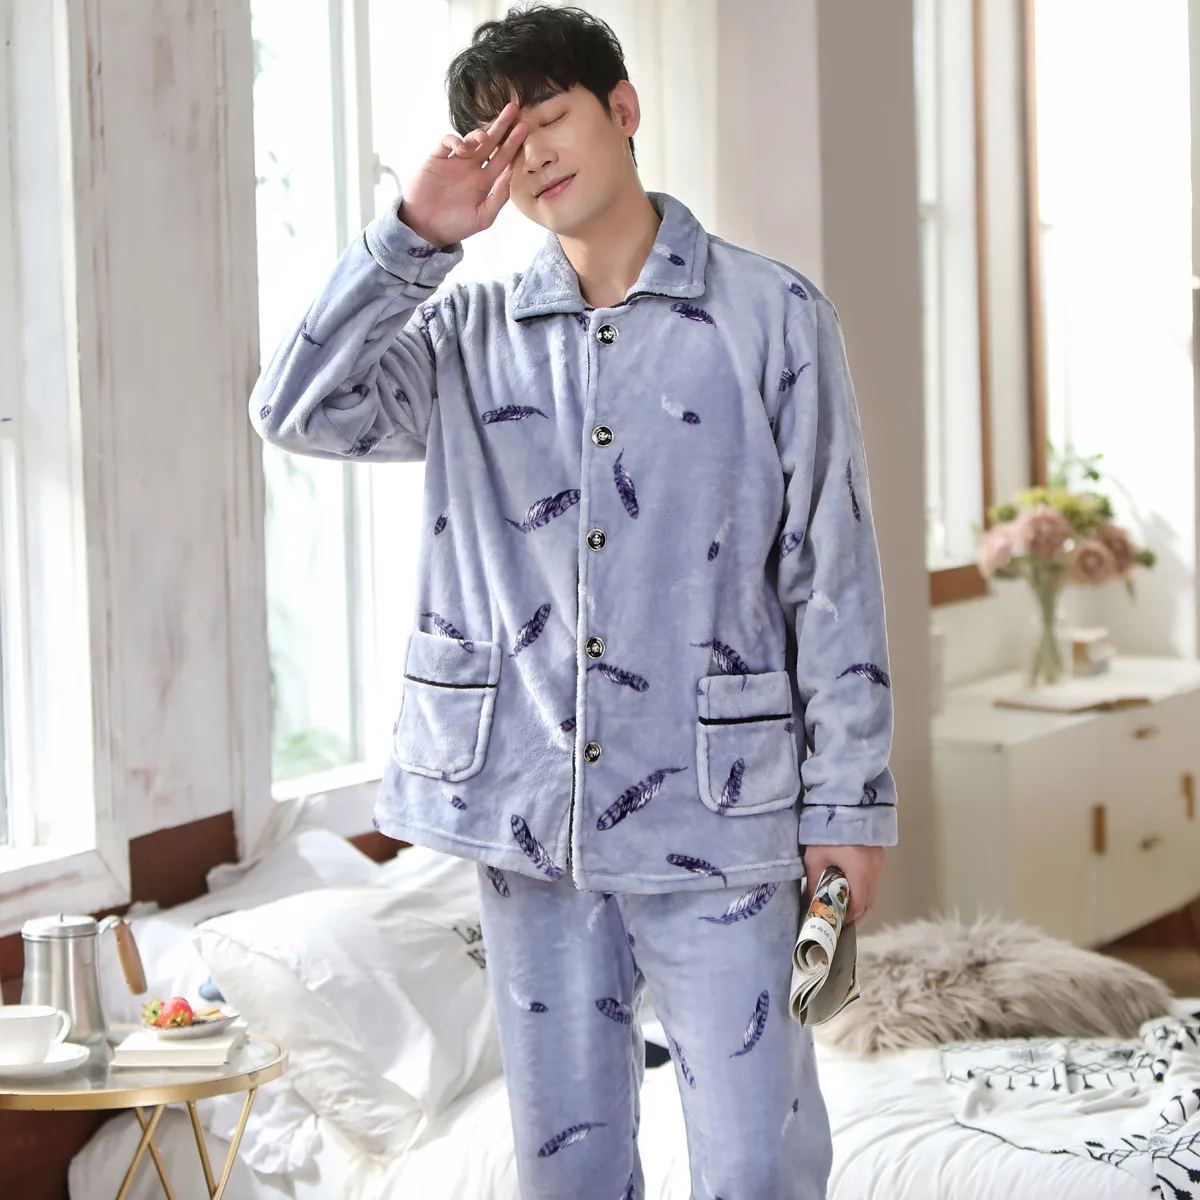 mens cotton pajama pants New Winter Thicken Warm Soft Flannel Pajamas Sets for Men Night Pijamas Male Long Sleeve Pyjamas Sleepwear Suit Casual Homewear red silk pajamas